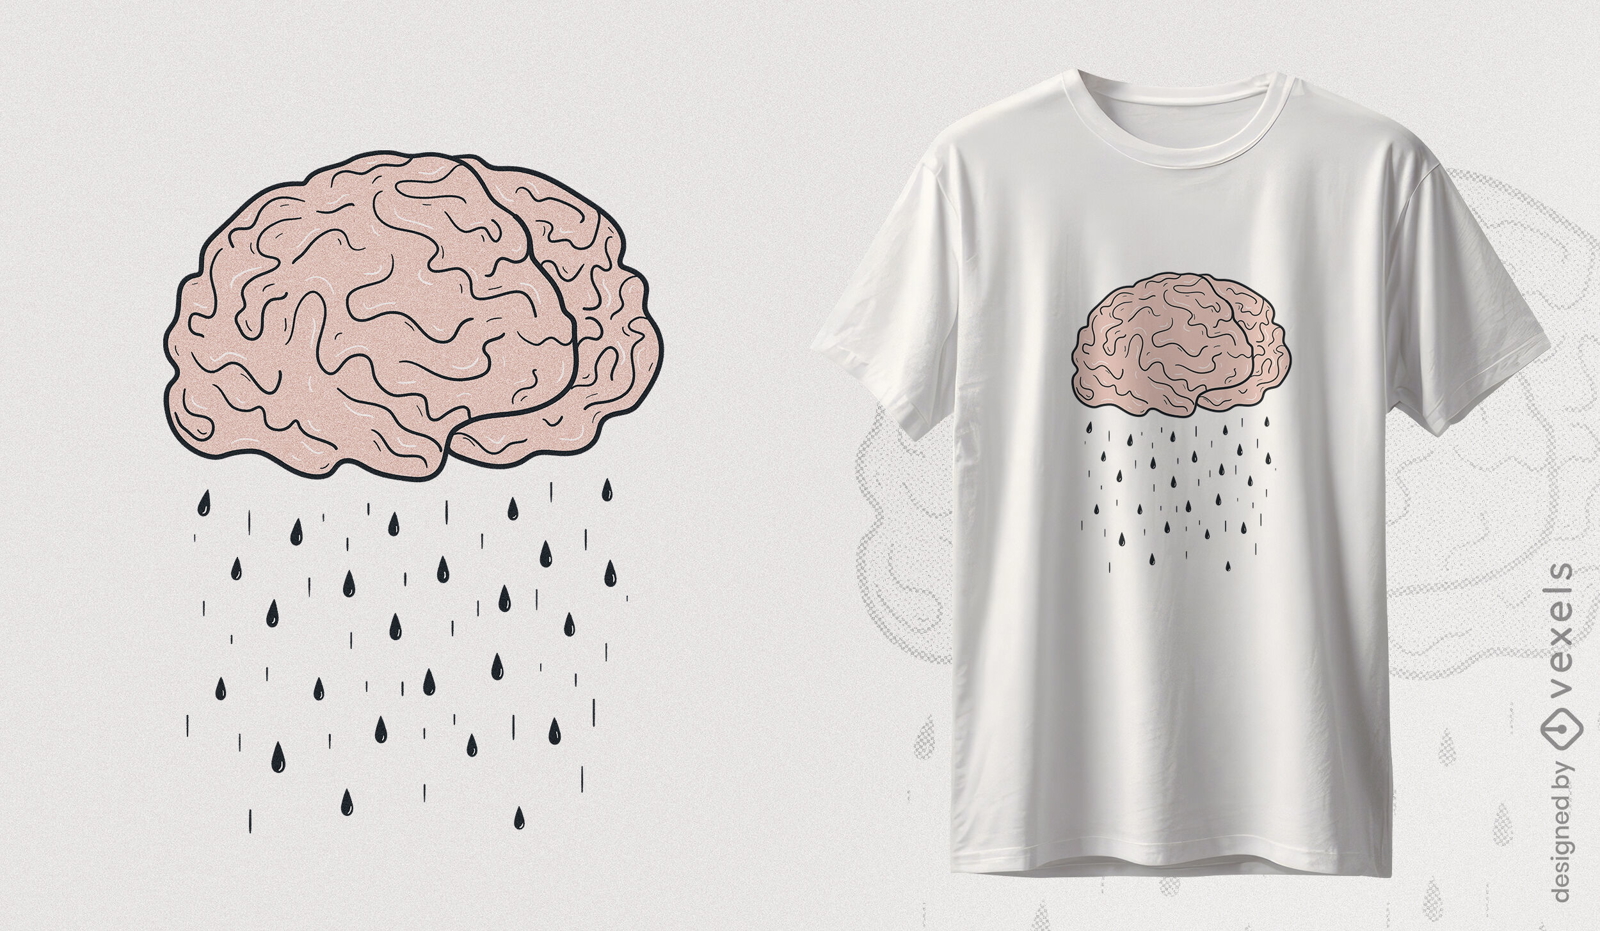 Dise?o de camiseta de lluvia de lluvia de ideas.